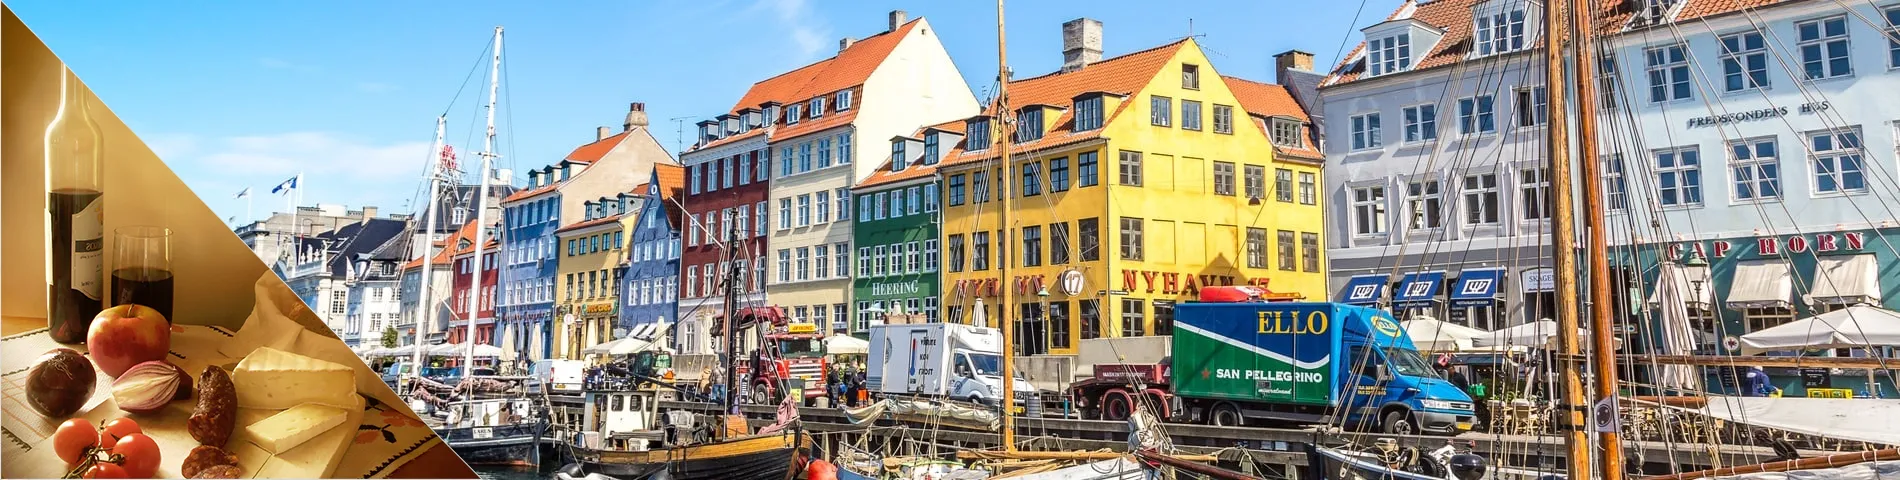 哥本哈根 - 丹麦语和文化课程